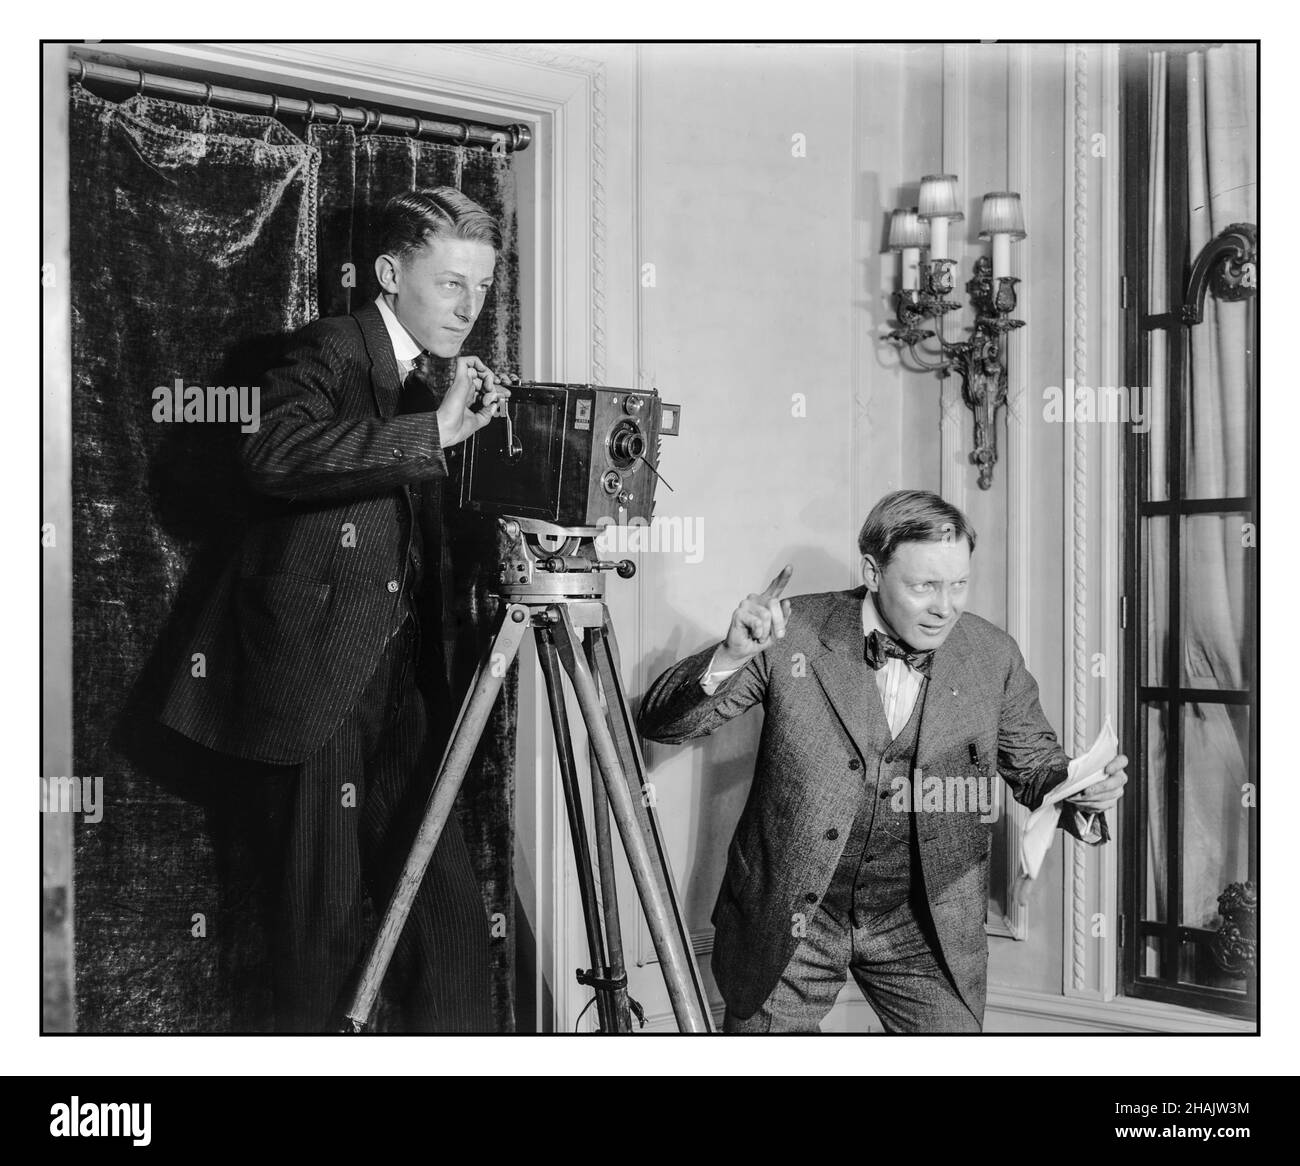 1900s Early Cinematography Movie Haciendo dos hombres usando una cámara de cine silenciosa de 35mm manos en interiores Detroit Publishing Co., editor [entre 1908 y 1920] Cinematography Photography 'Le Parvo' /'J. Debrie, París' en la placa de los fabricantes en la cámara de película de 35 mm. Foto de stock